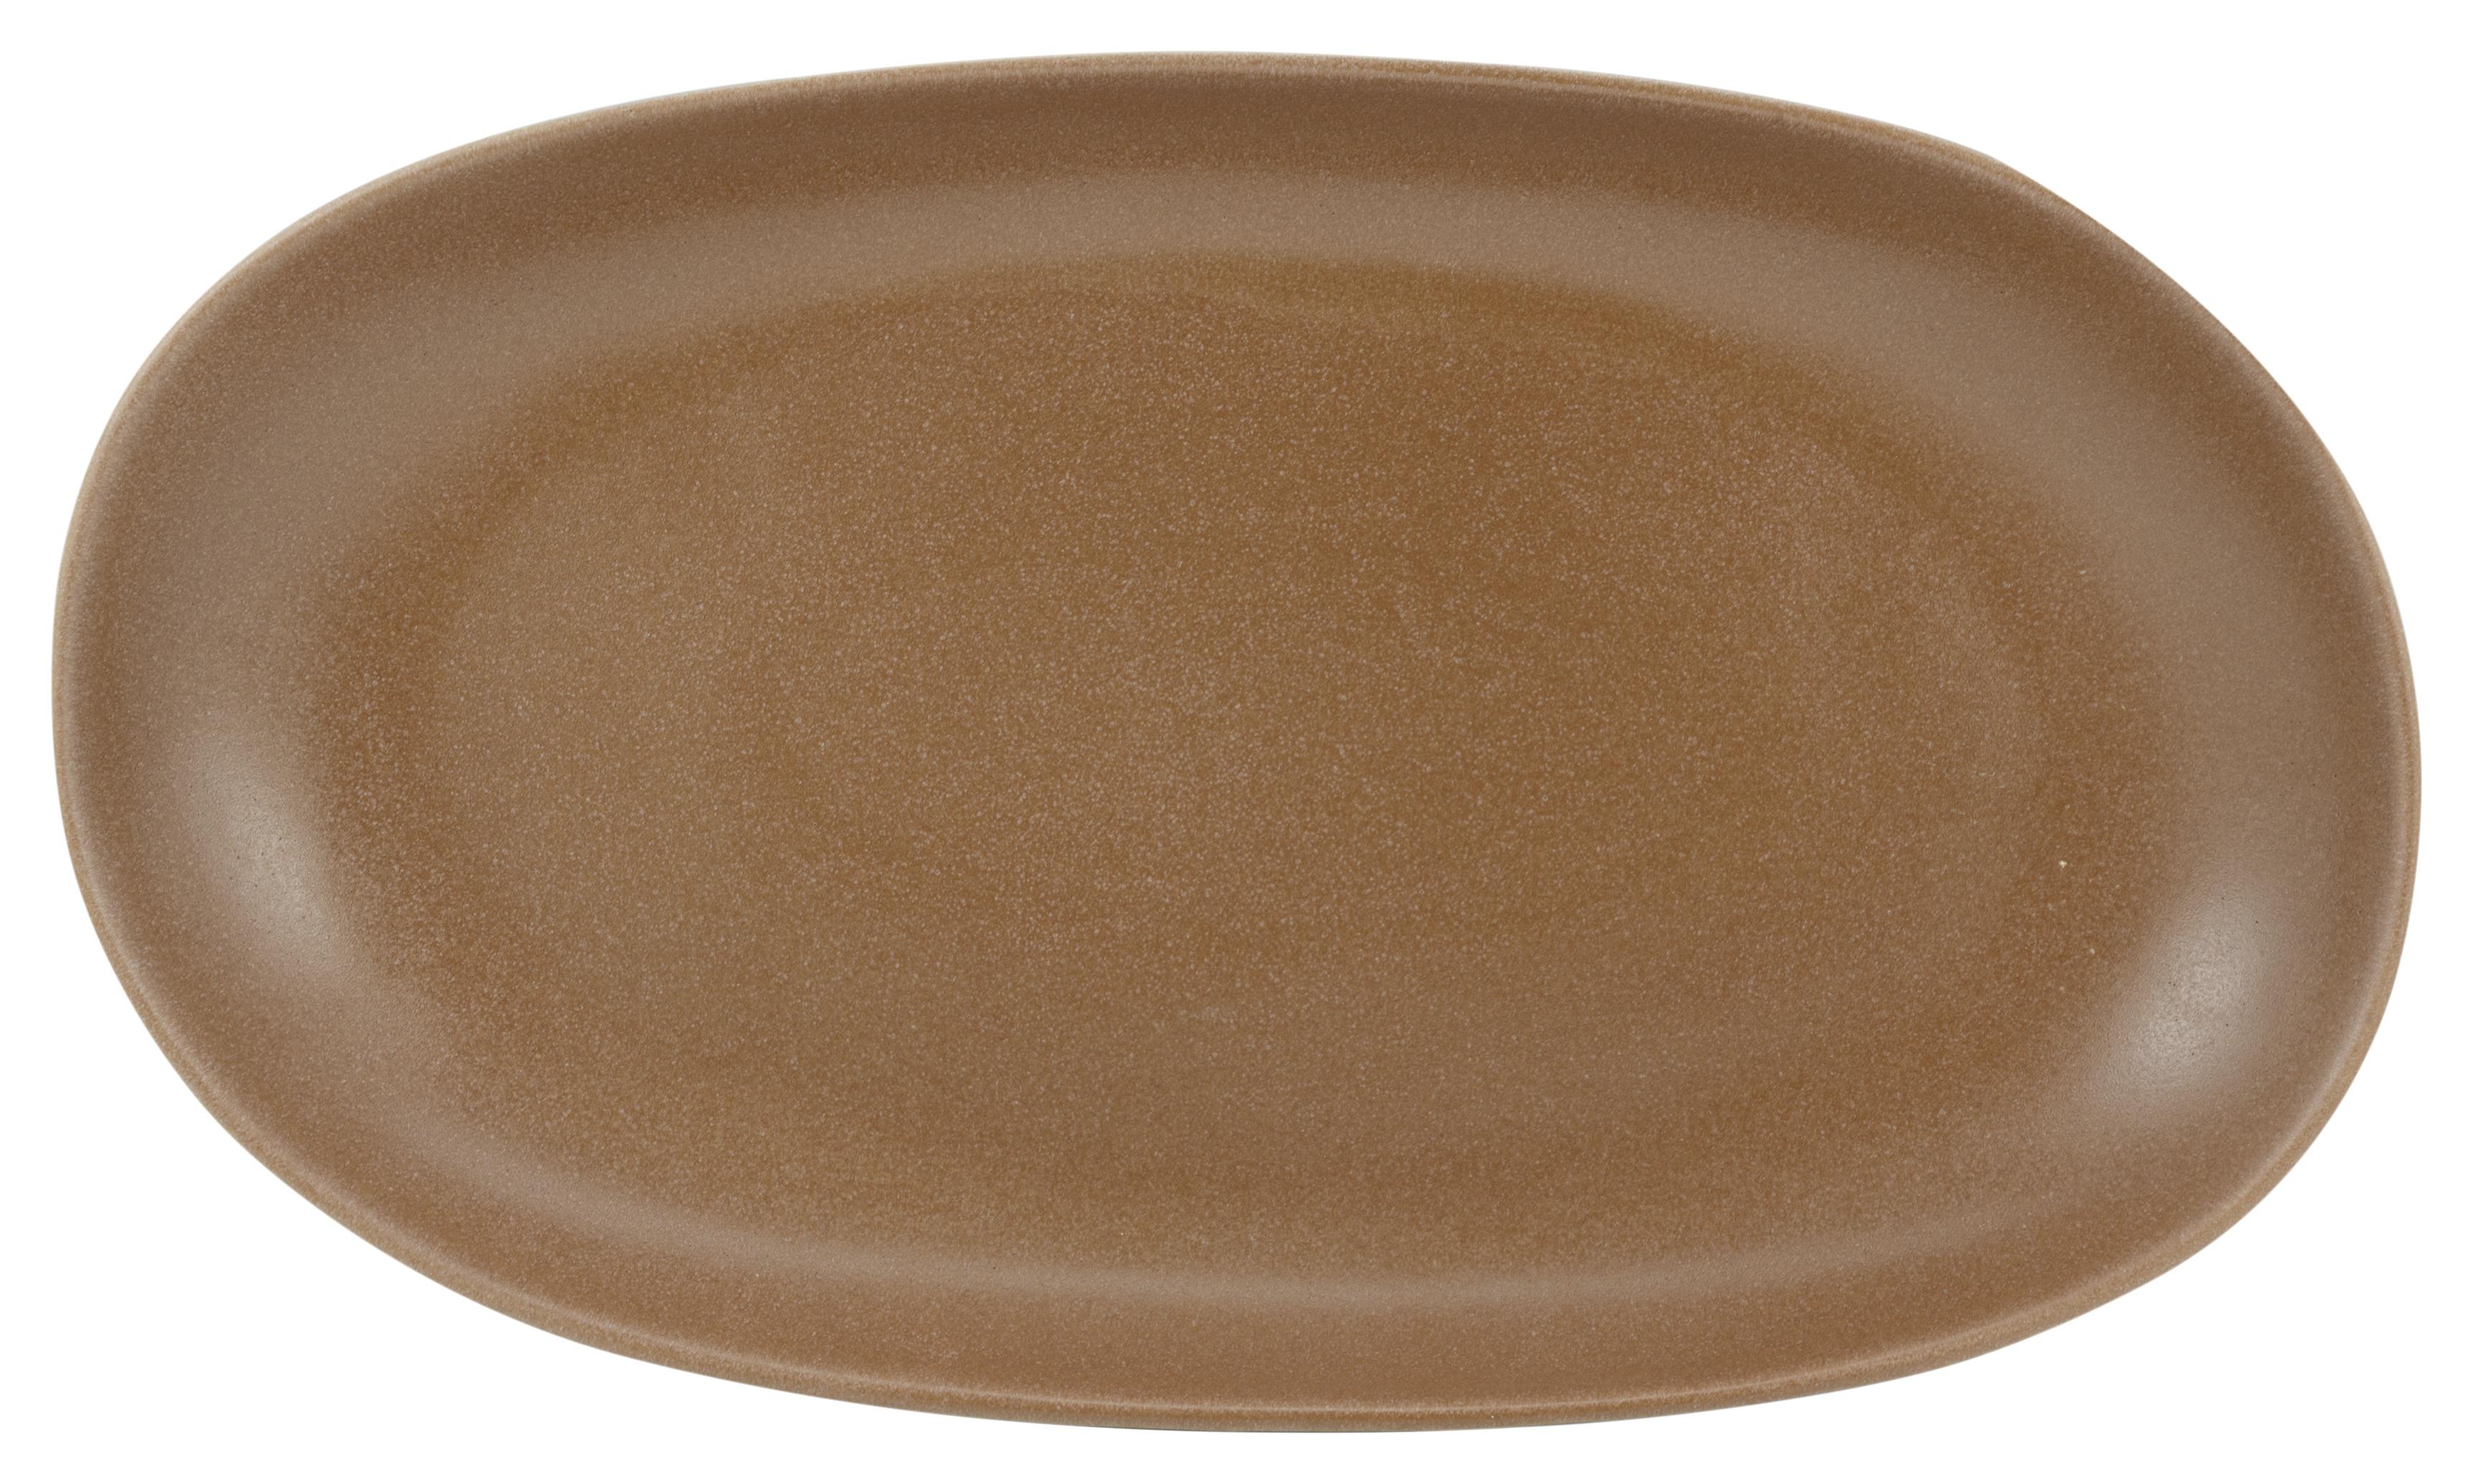 Platzteller Sahara aus Steinzeug - Terra cotta, LIFESTYLE, Keramik (36/4,5/22cm) - Zandiara